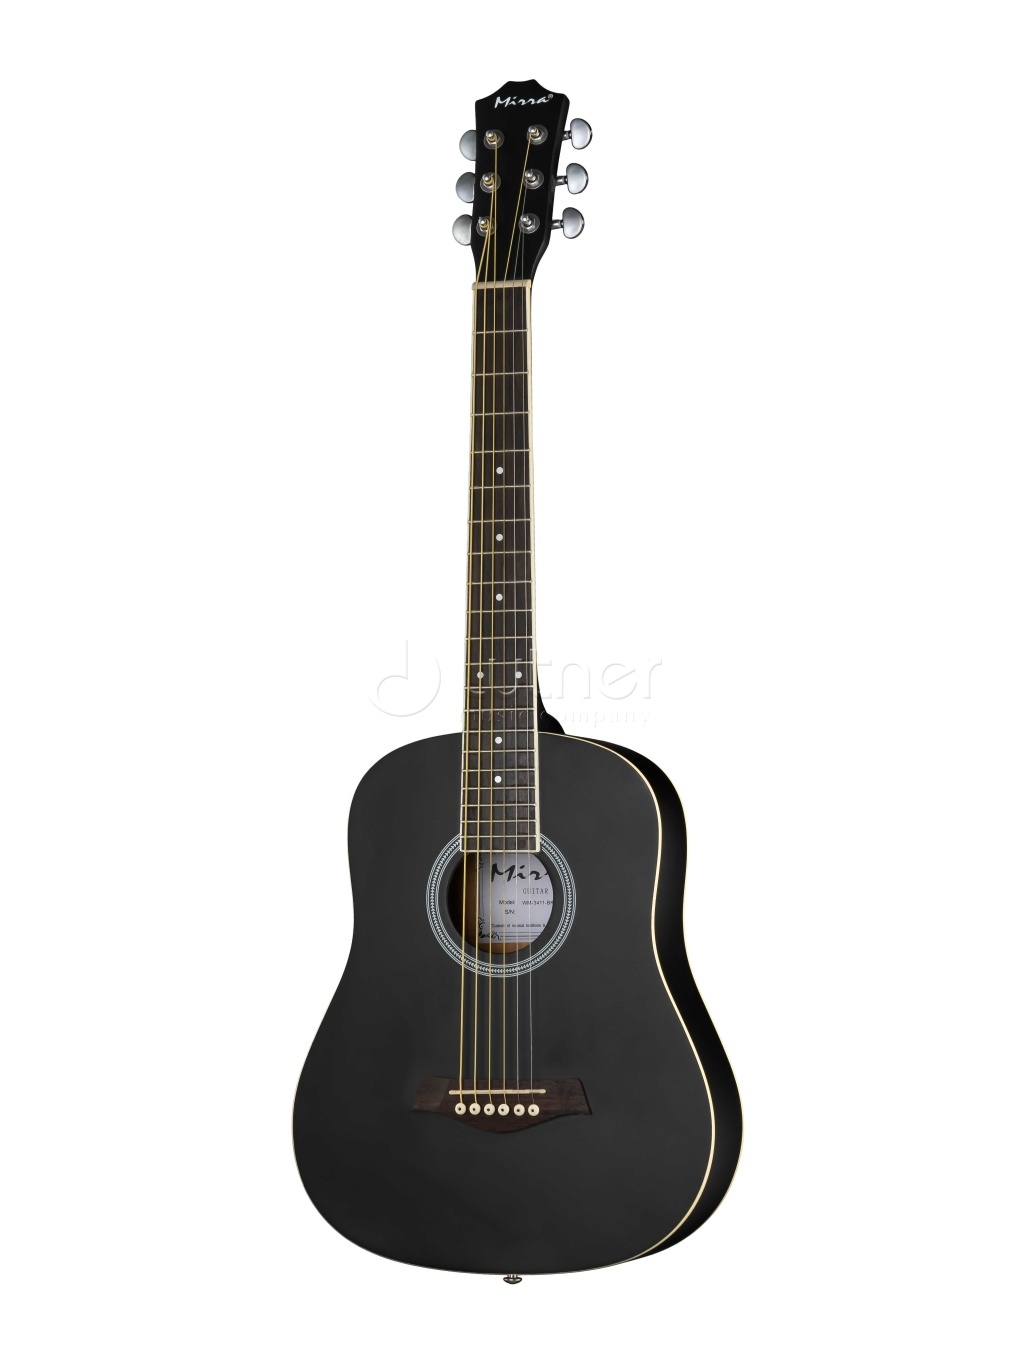 акустические гитары mirra wg 4111 bk Акустические гитары Mirra WM-3411-BK 34